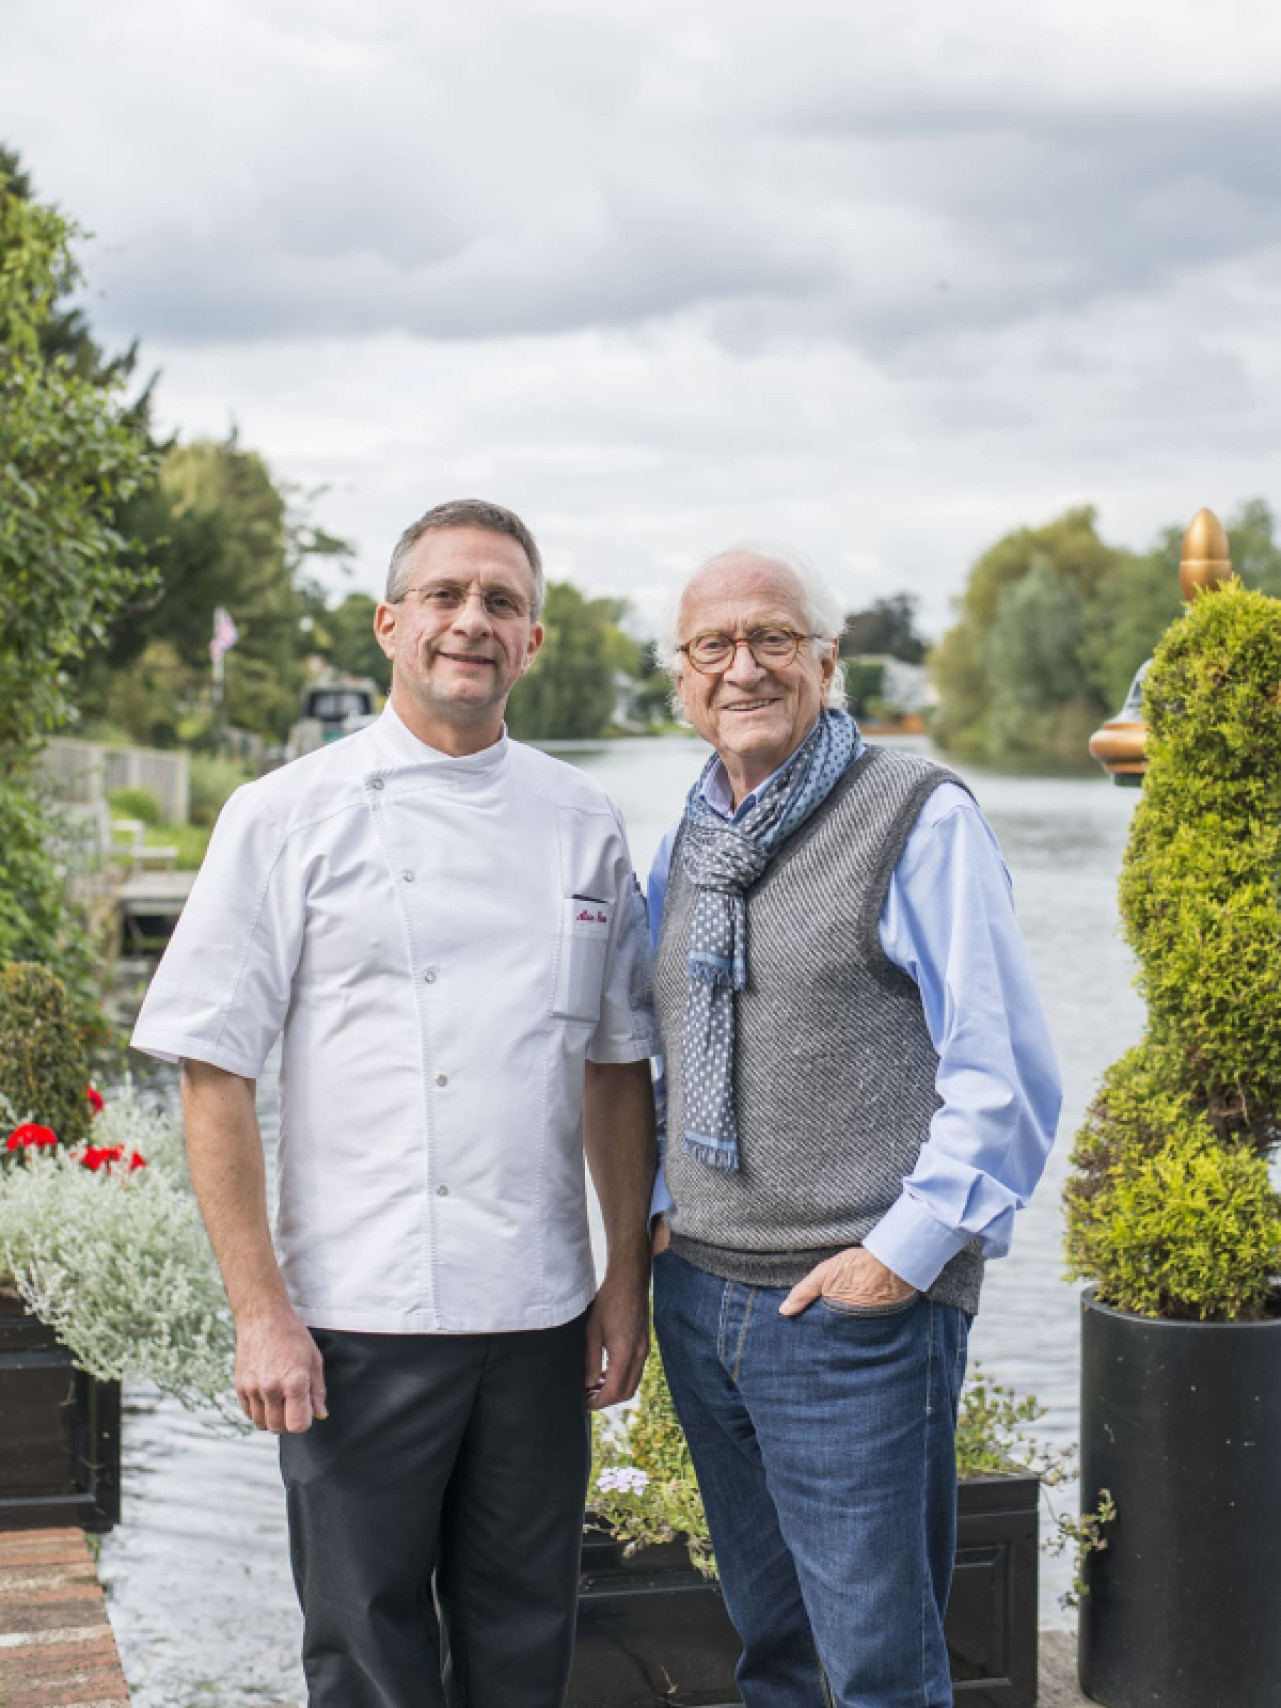 Michel Roux Sr, célèbre chef étoilé, renouvelle sa confiance en EuroCave - Photo : Michel Roux et son fils Alain Roux